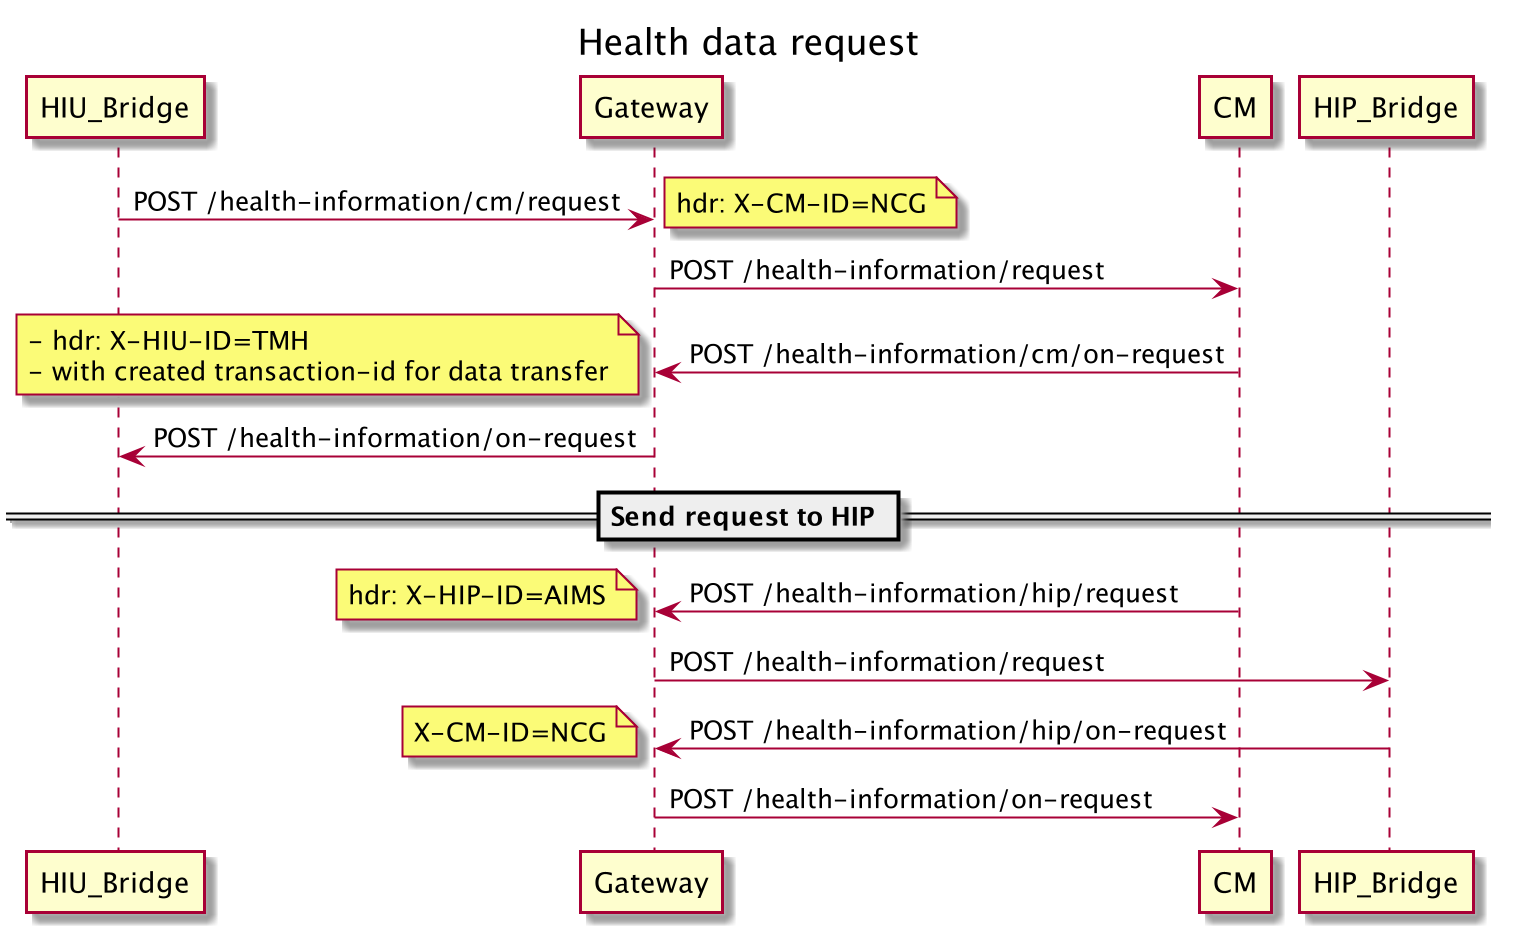 HIU requests patient data